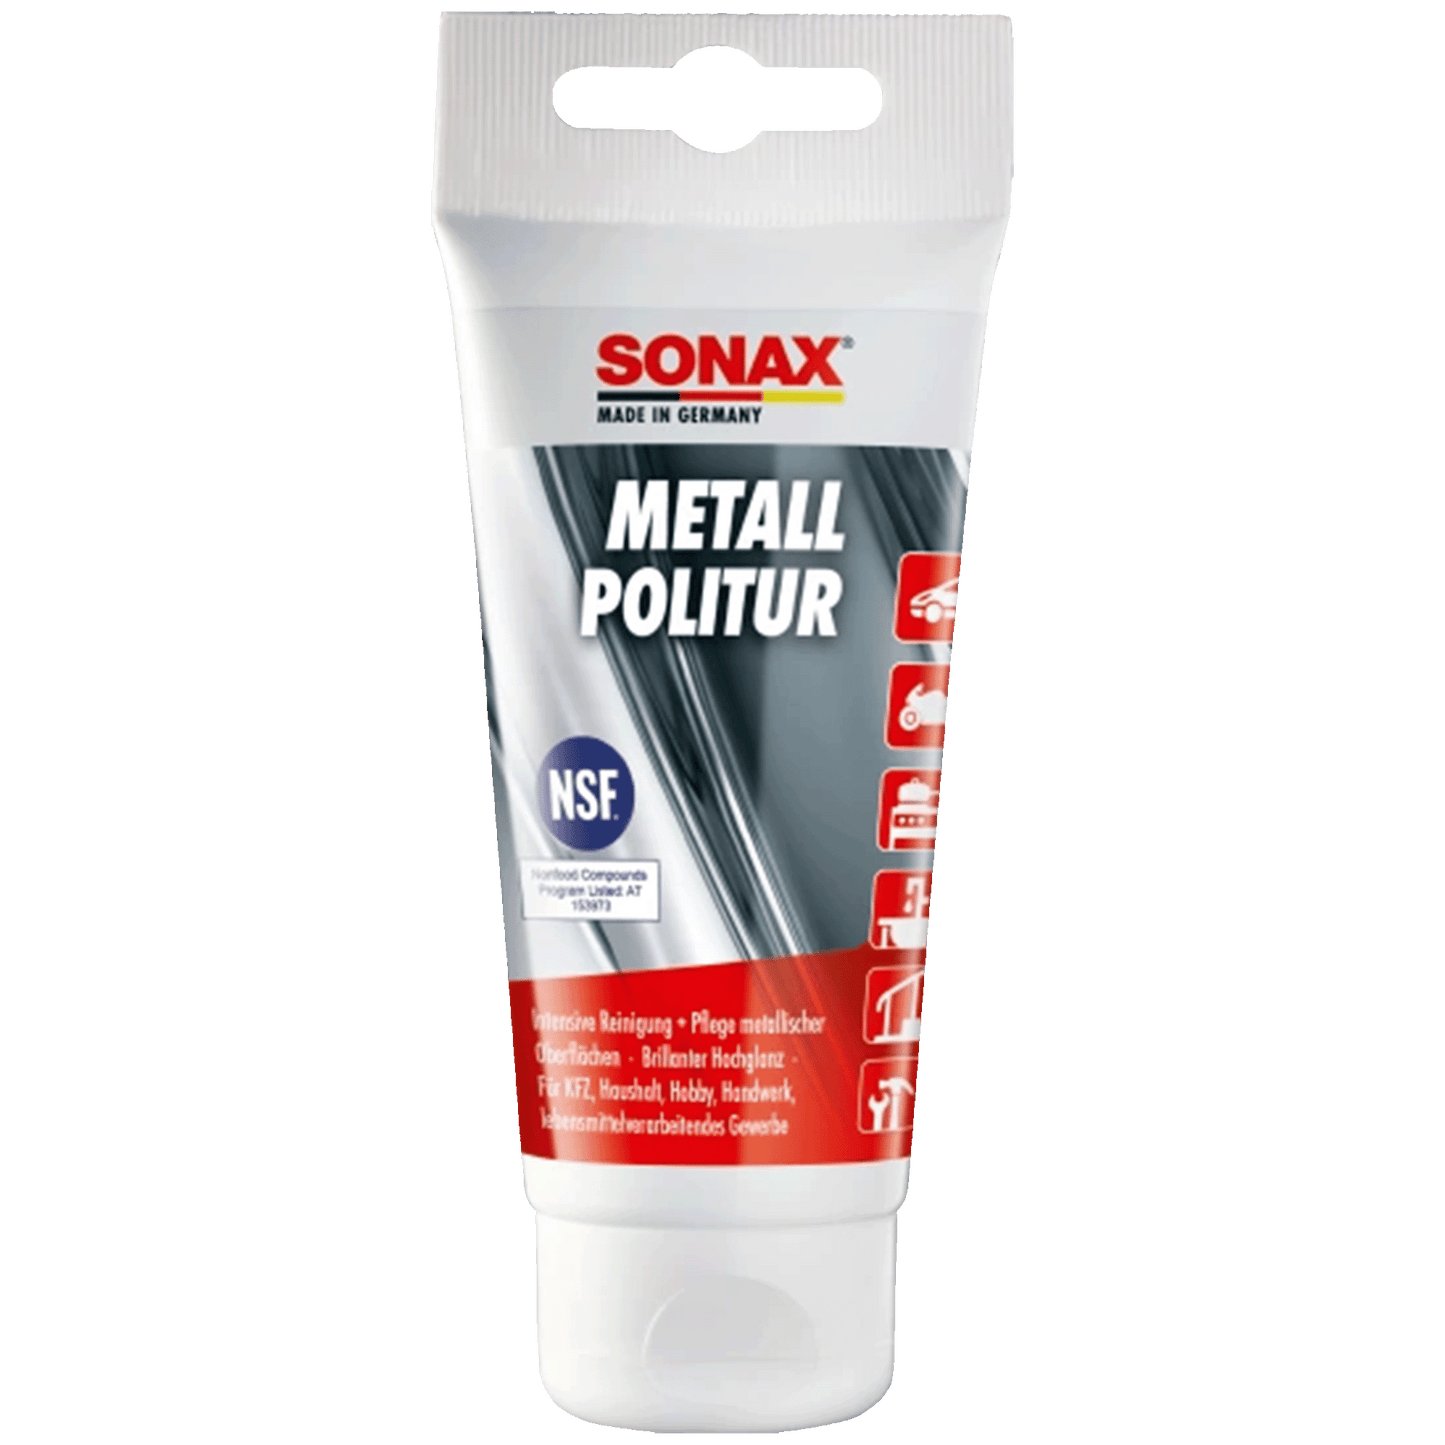 SONAX MetallPolitur - 75ml